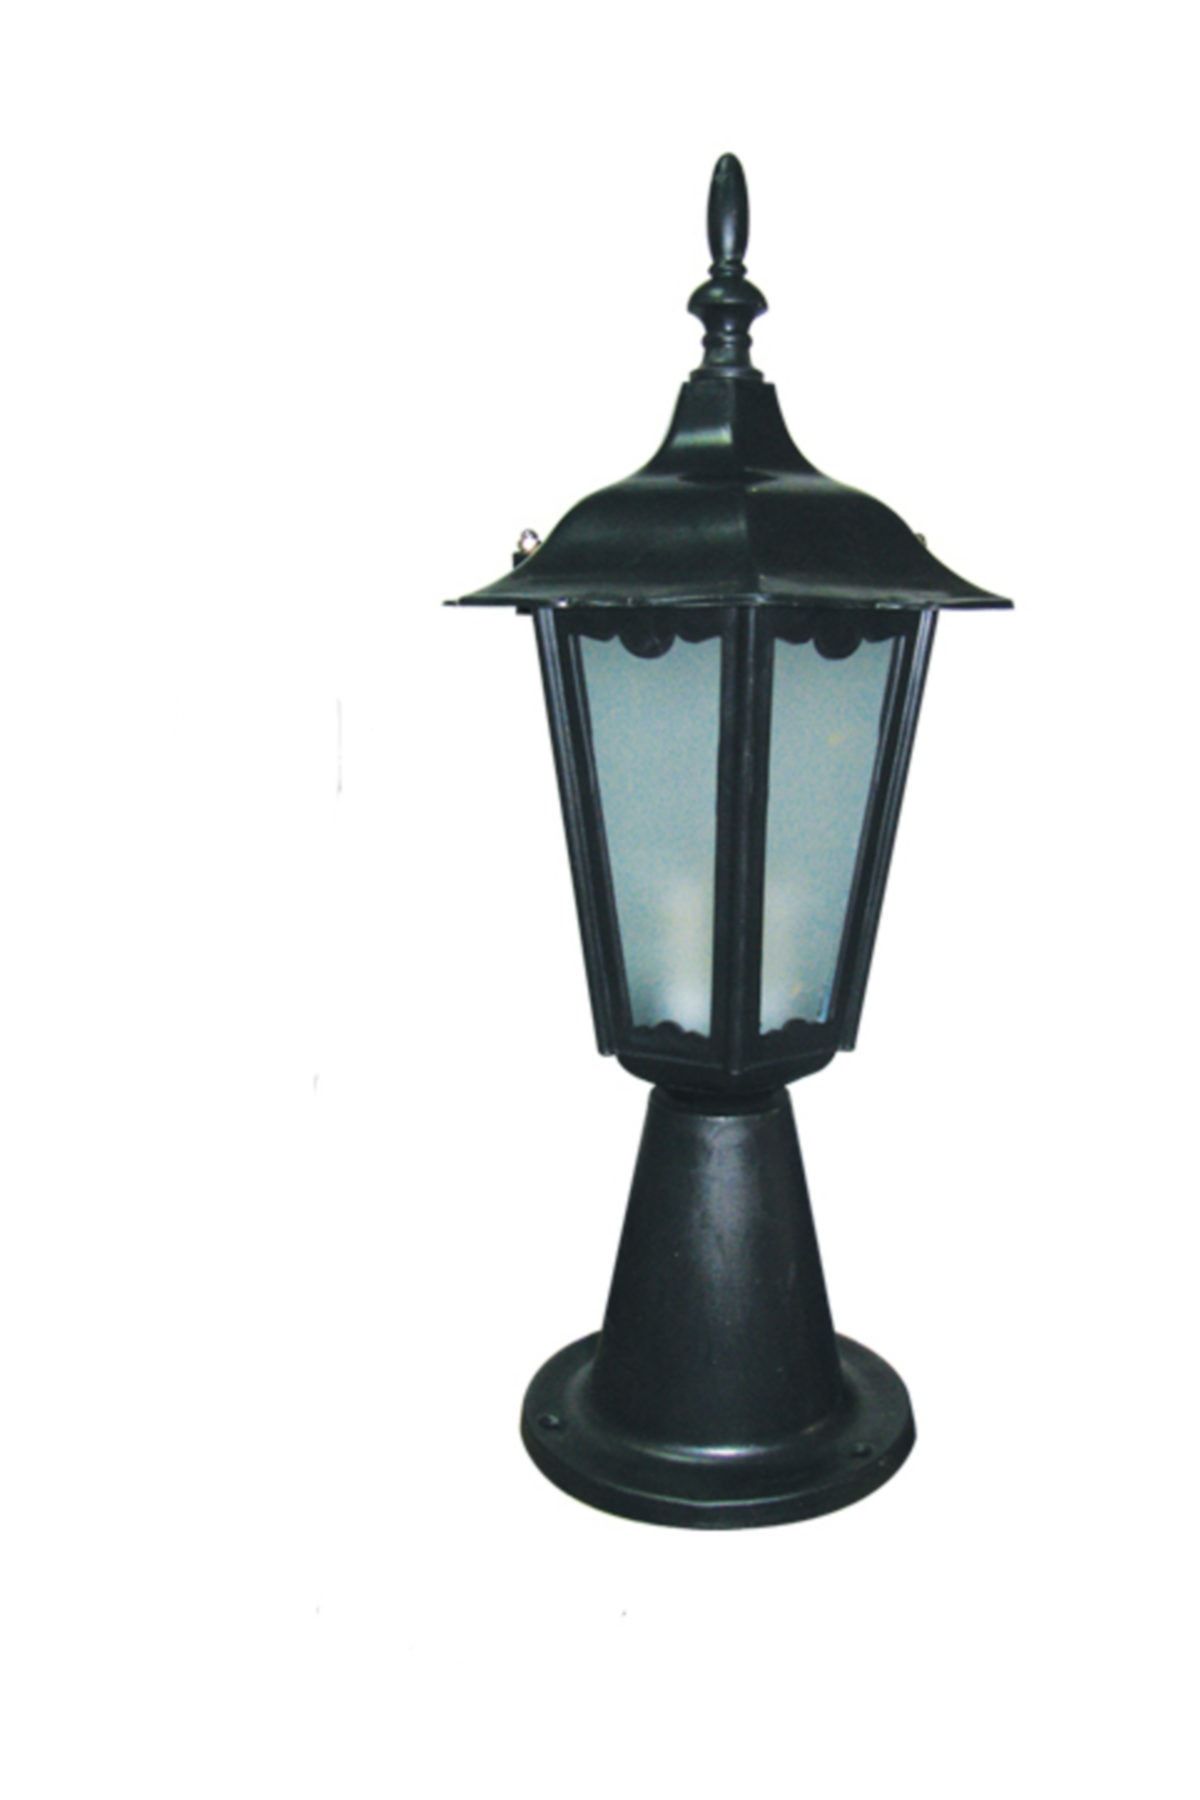 D-light Küçük Altıgen Fener Setüstü Siyah Renk Bahçe Lambası